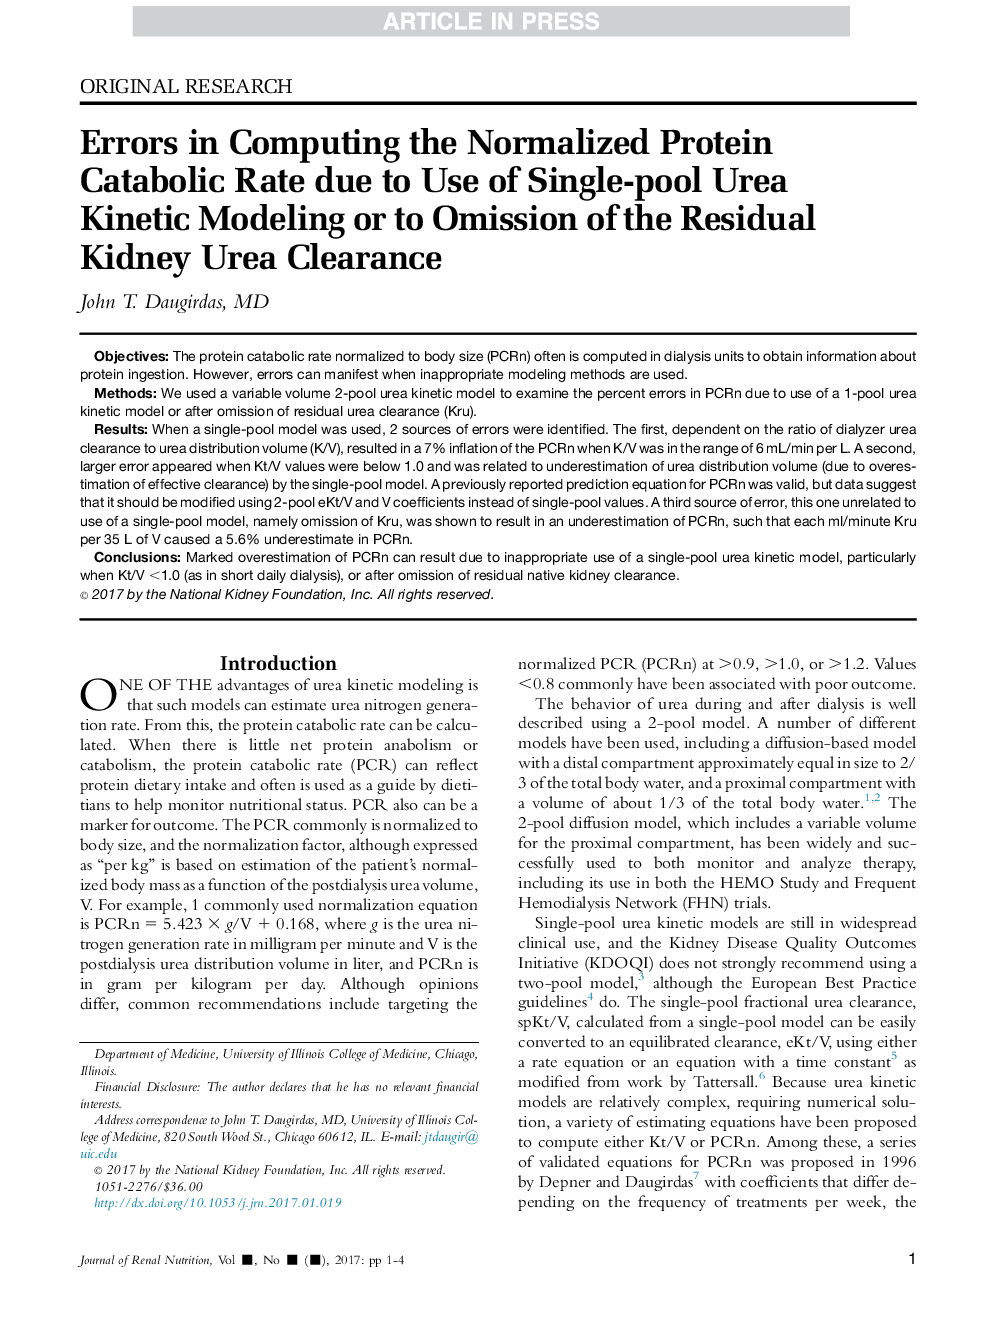 اشتباهات در محاسبه نرخ کاتابولیک پروتئین نرمال شده به دلیل استفاده از مدل تکینکینتیک جهت تخریب اوره یا حذف اوره کلسترول باقی مانده 